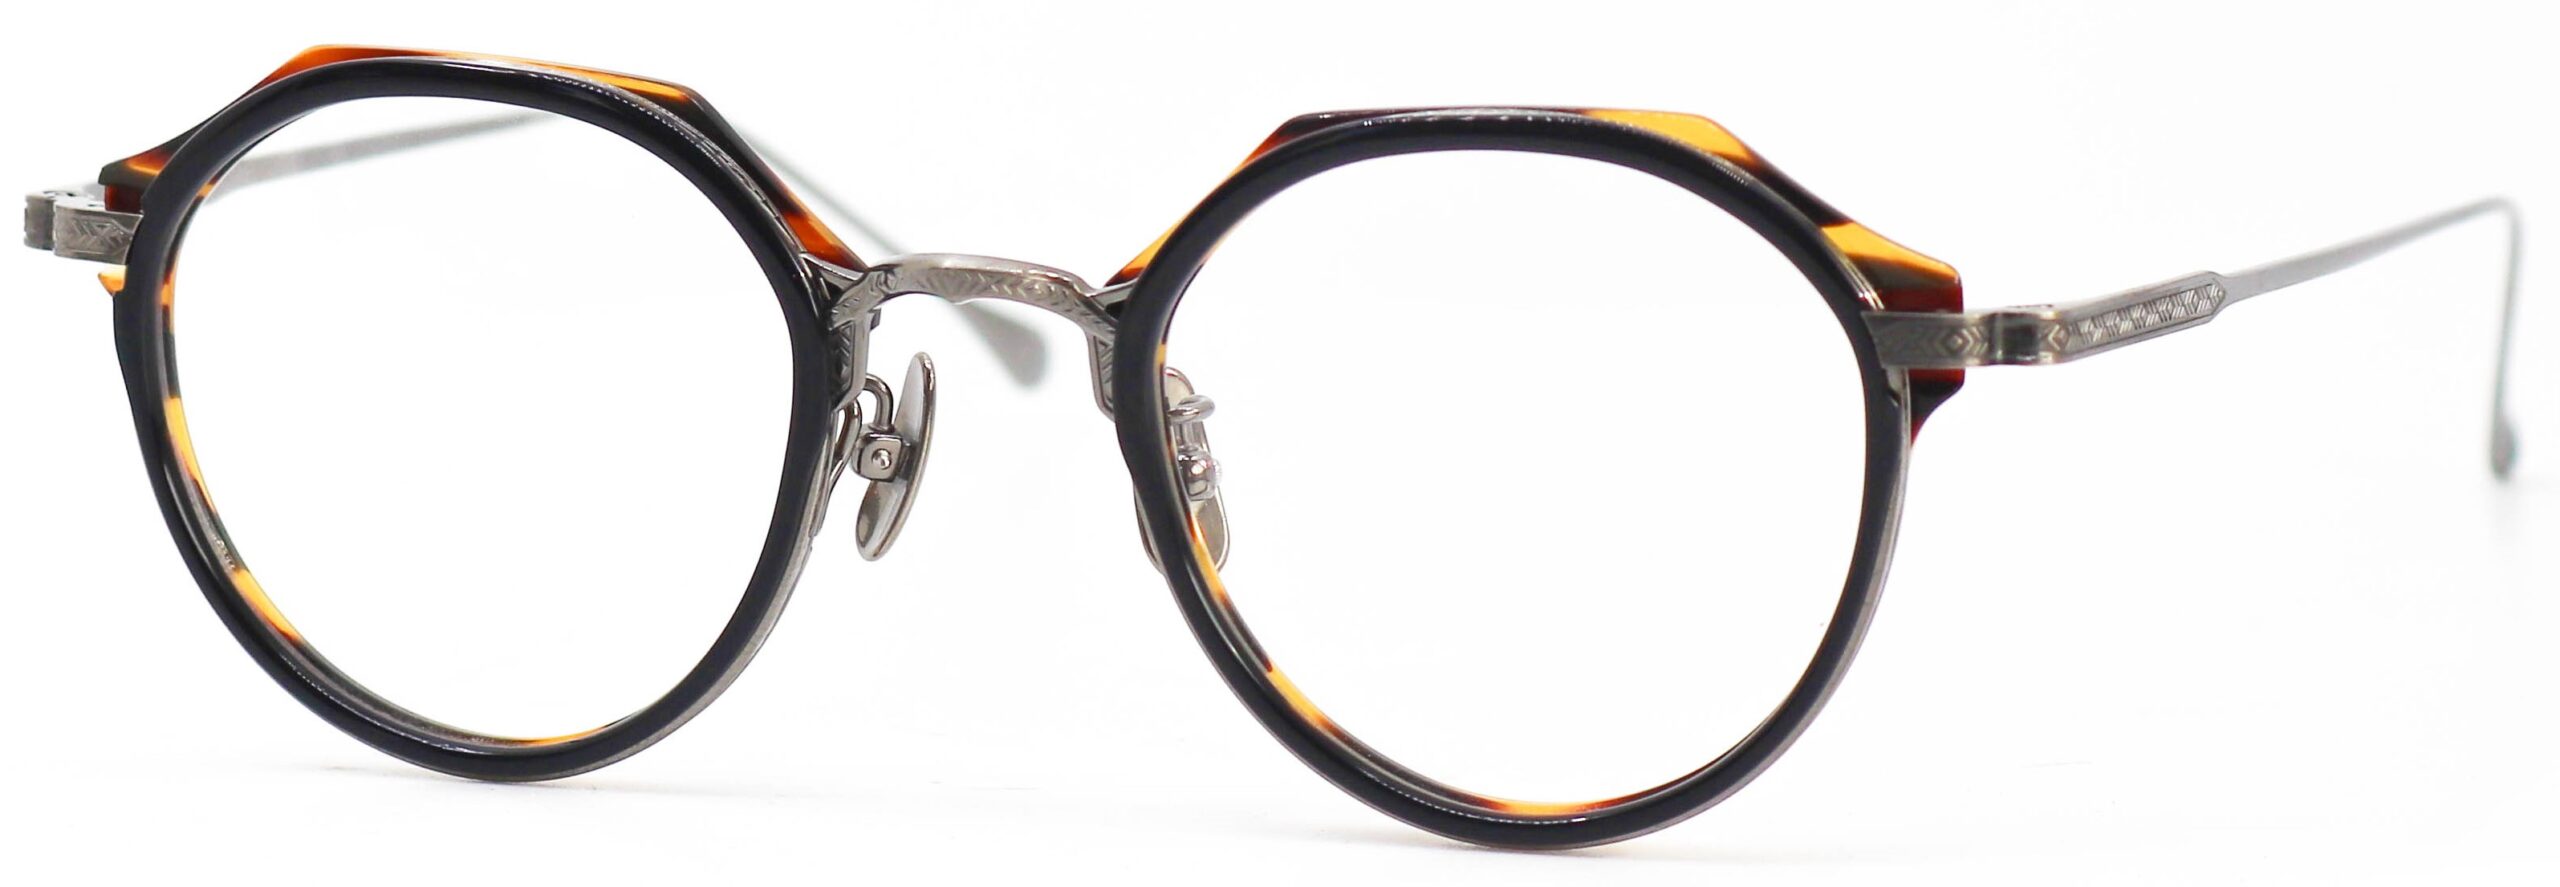 眼鏡のカラータイプC-5 DarkNAVY-Tortoise/AT-Silver